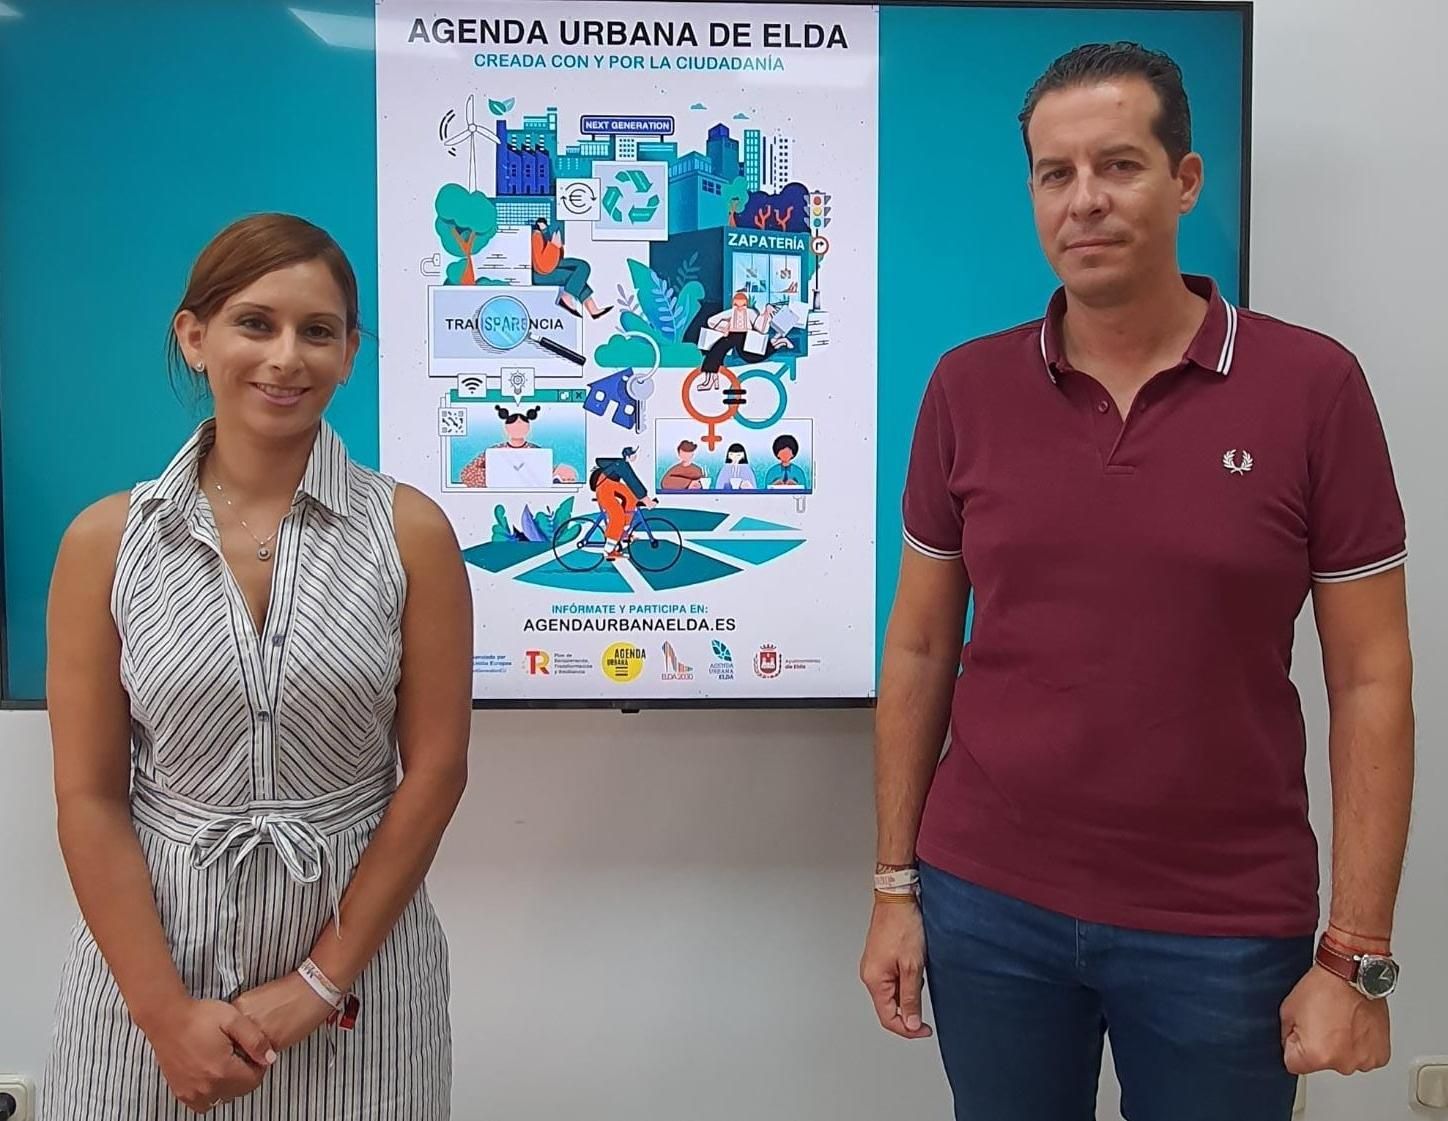 La presentación del concurso a cargo del alcalde Rubén Alfaro y la concejala Silvia Ibáñez.